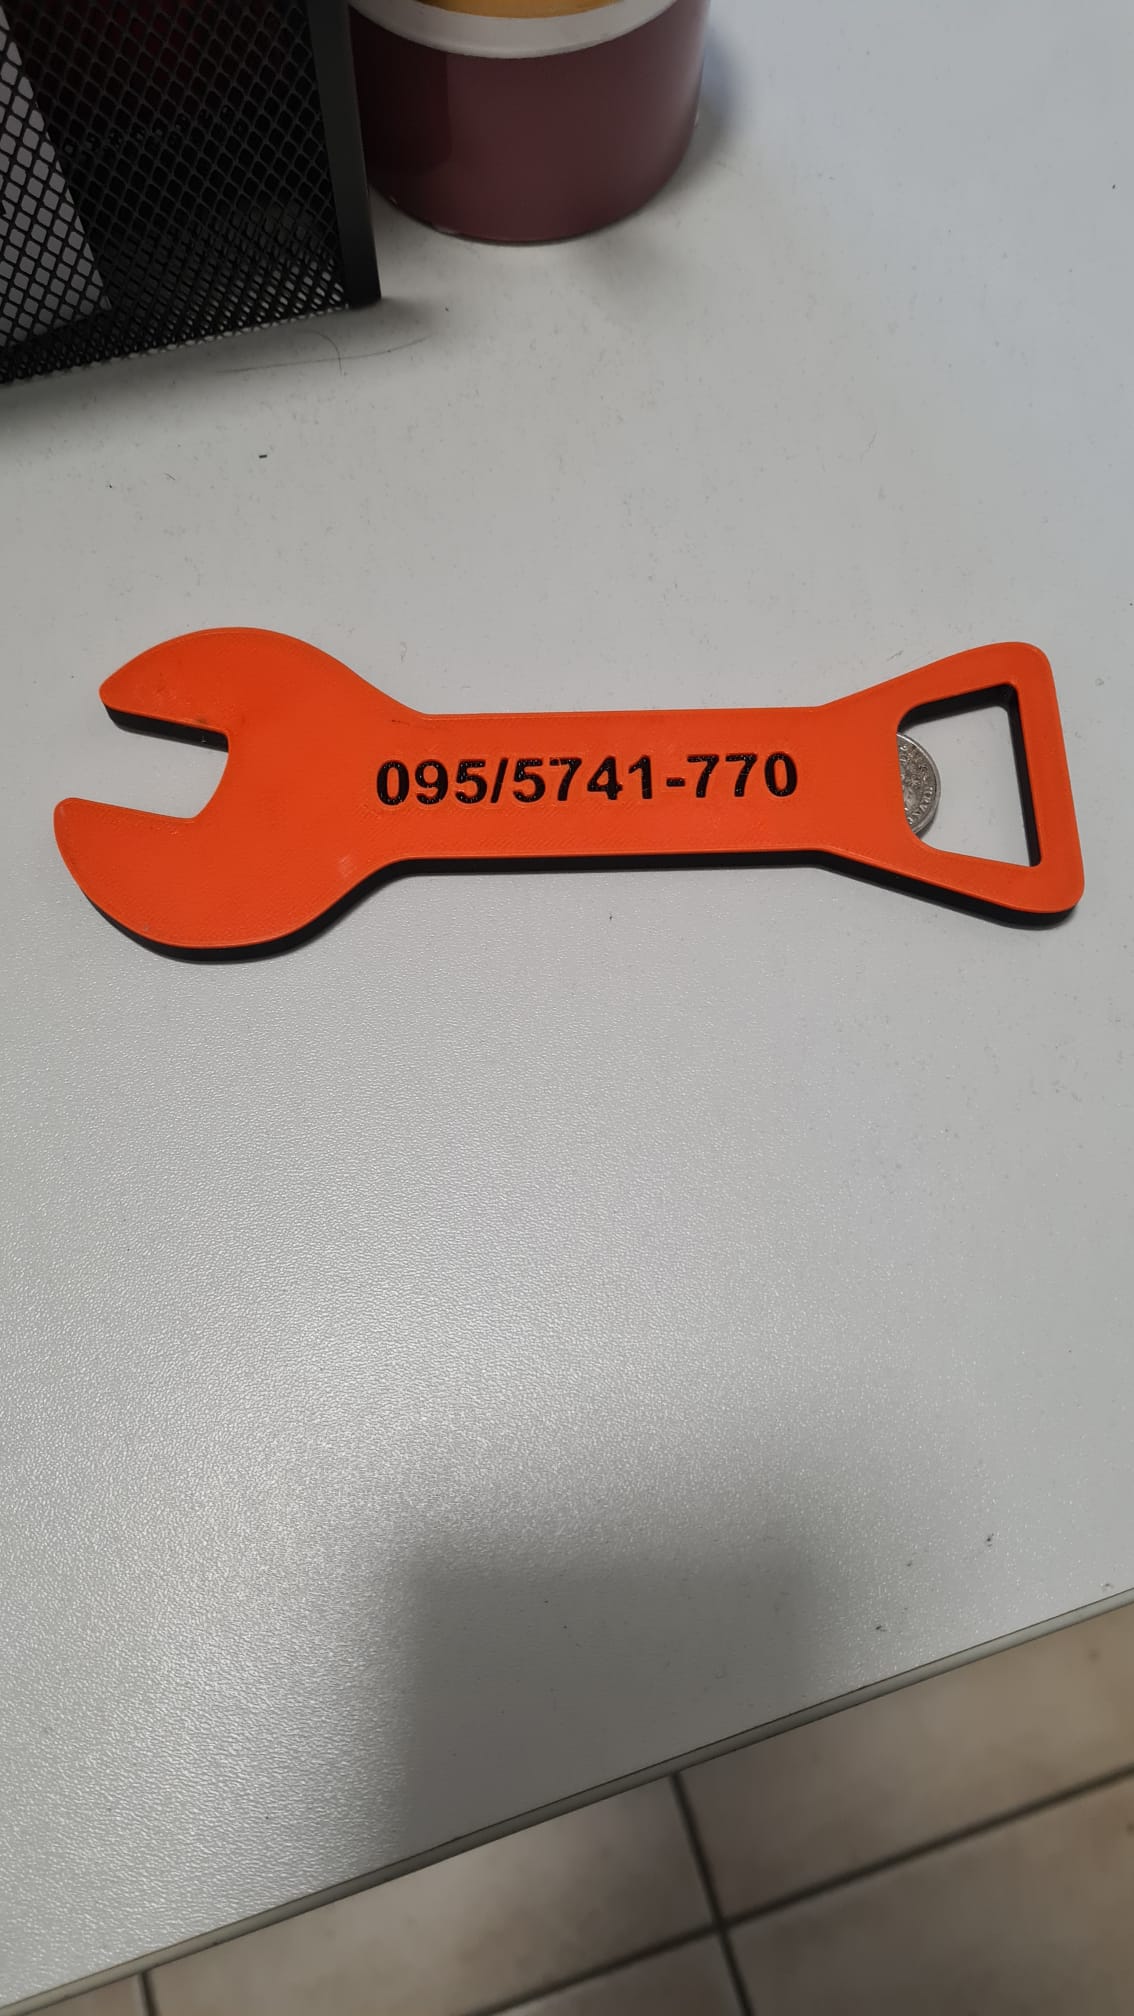 Tool bottle opener for mechanics